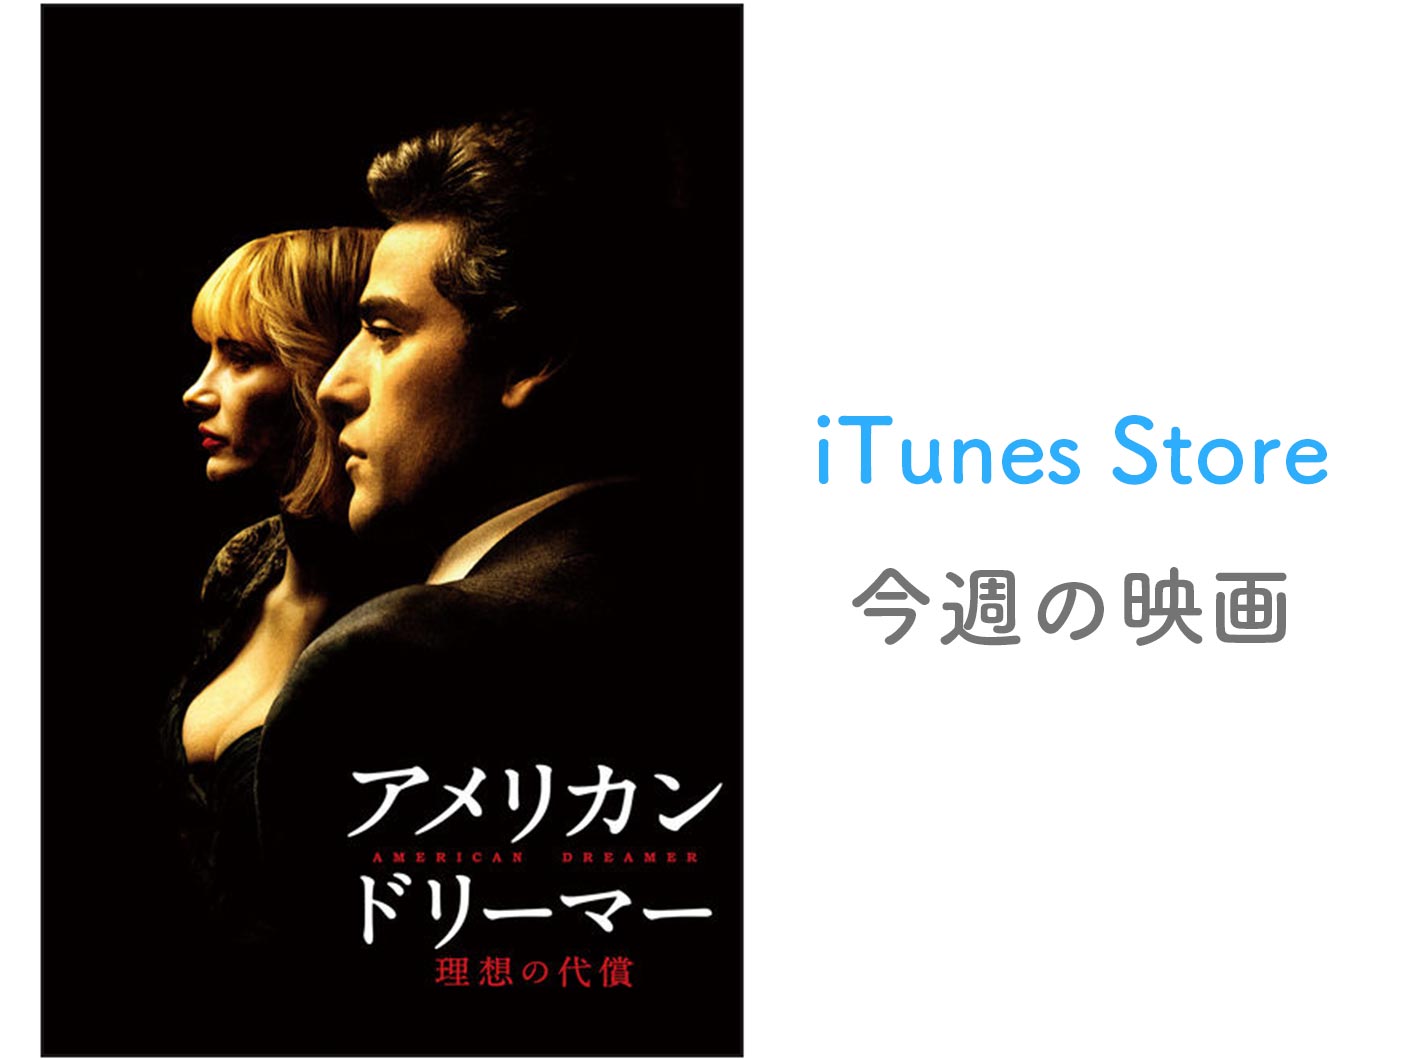 【レンタル100円】iTunes Store、「今週の映画」として「アメリカン・ドリーマー 理想の代償」をピックアップ